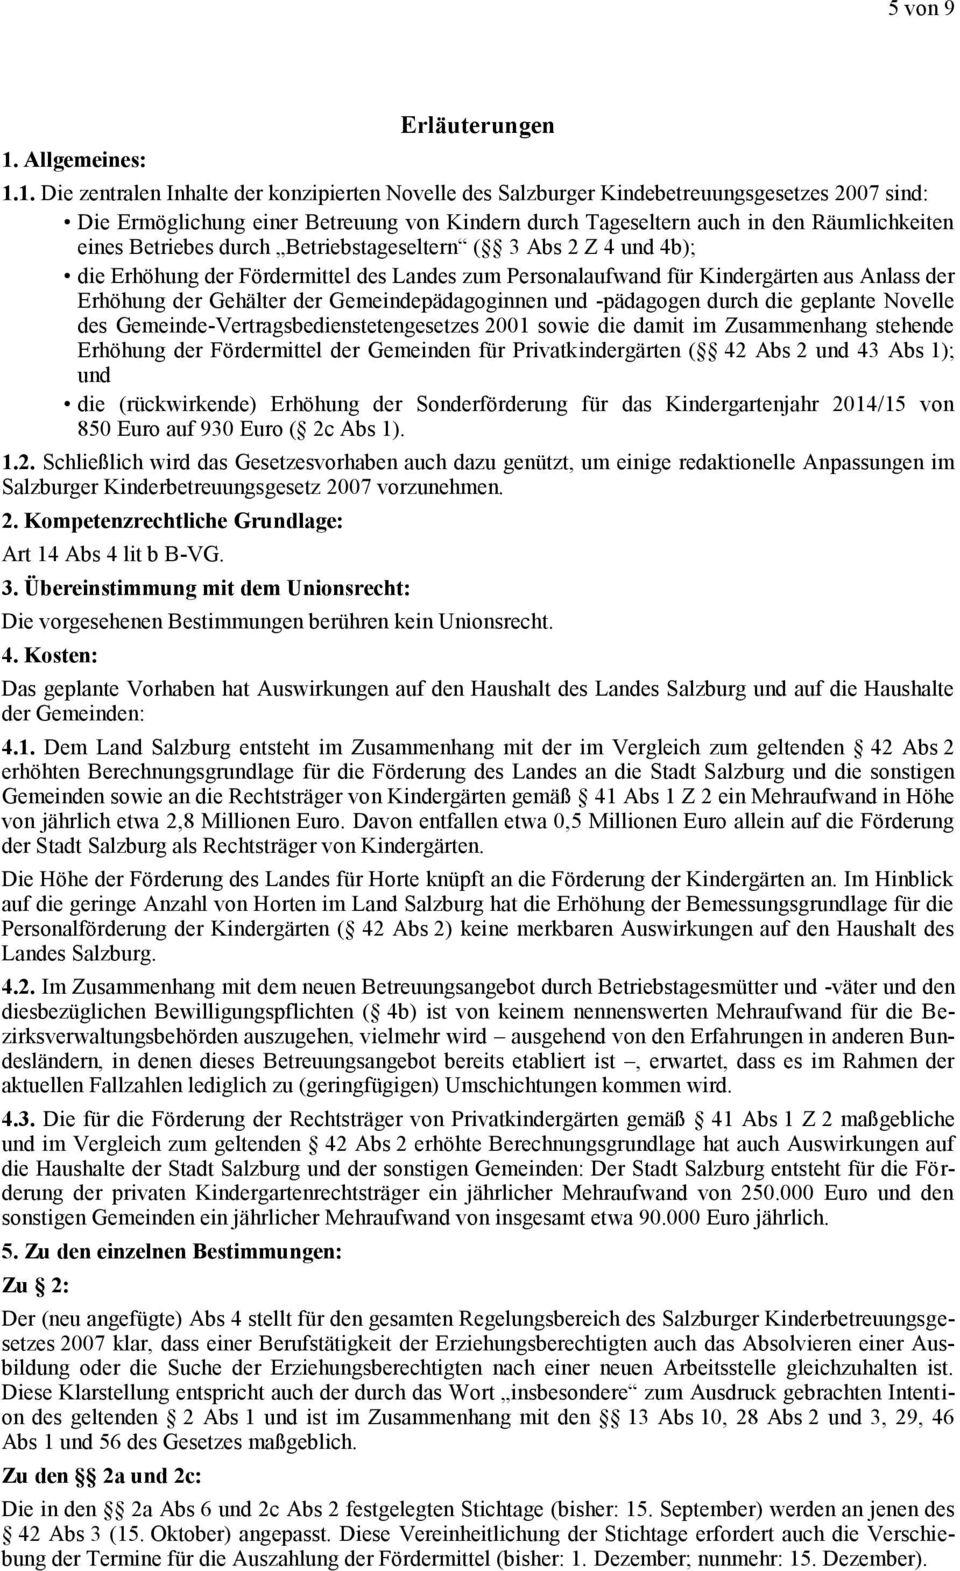 1. Die zentralen Inhalte der konzipierten Novelle des Salzburger Kindebetreuungsgesetzes 2007 sind: Die Ermöglichung einer Betreuung von Kindern durch Tageseltern auch in den Räumlichkeiten eines